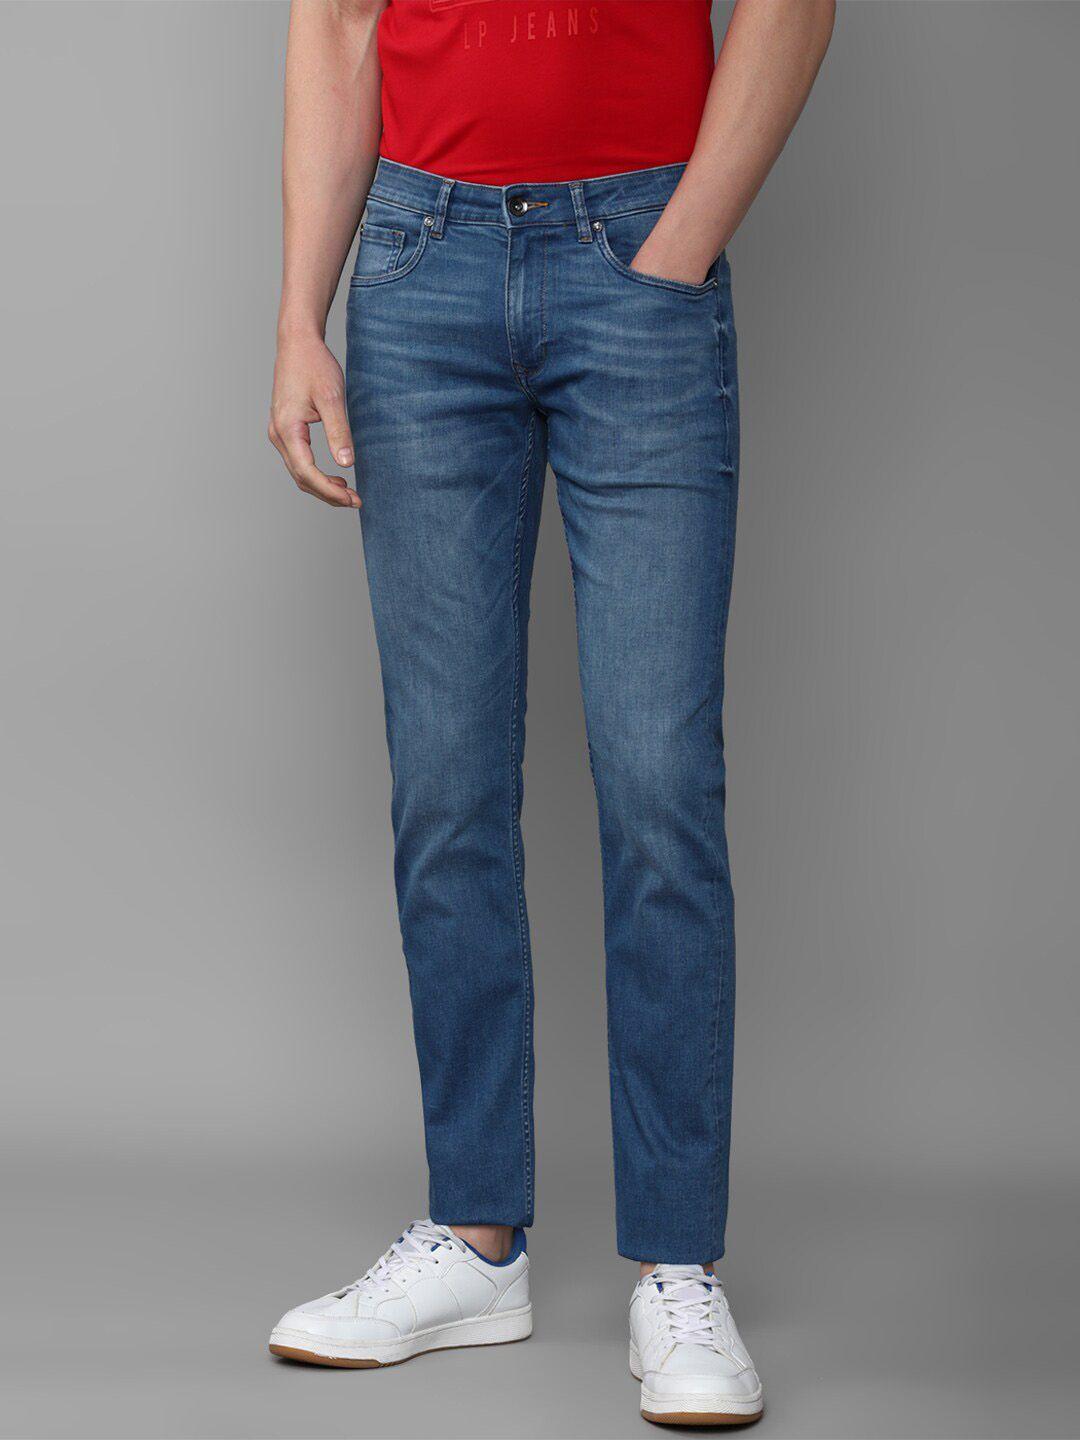 louis-philippe-jeans-men-blue-slim-fit-light-fade-jeans